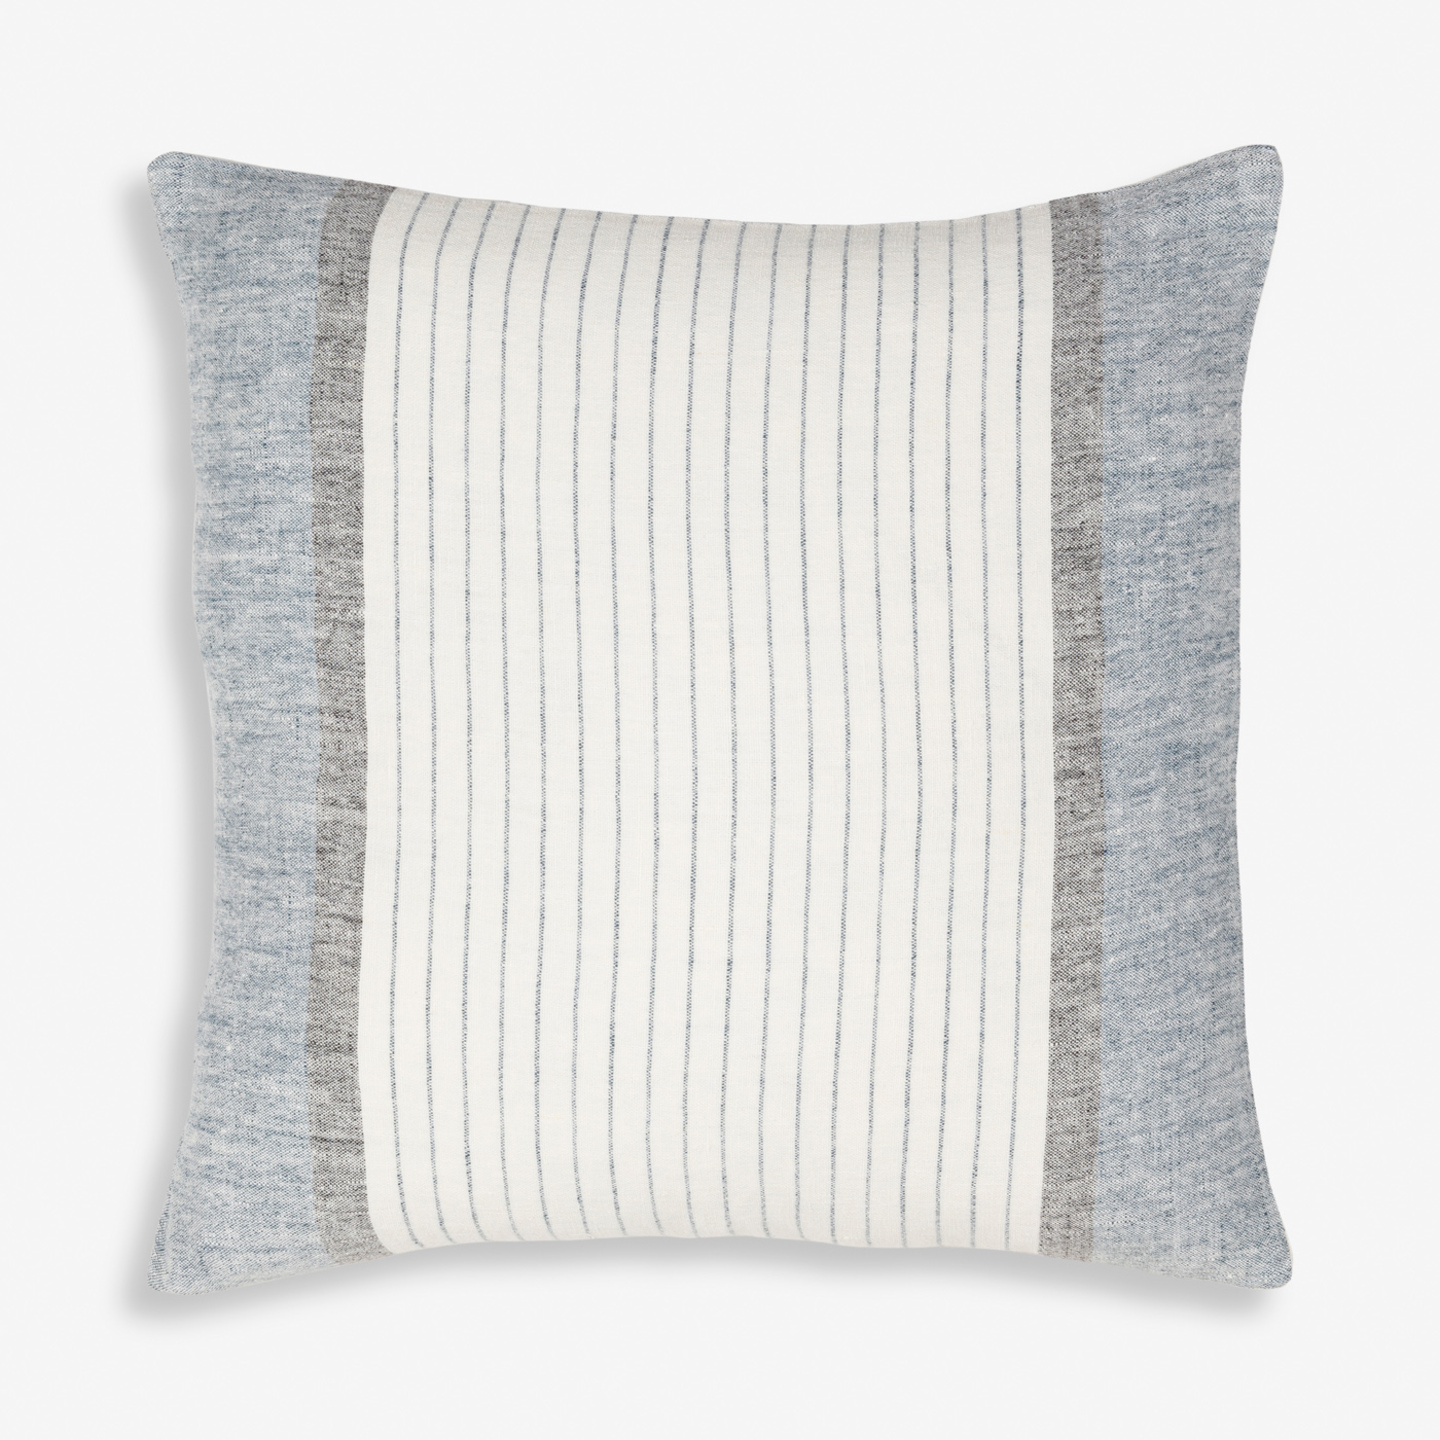 Soleil Linen Throw Pillow (20"x20")